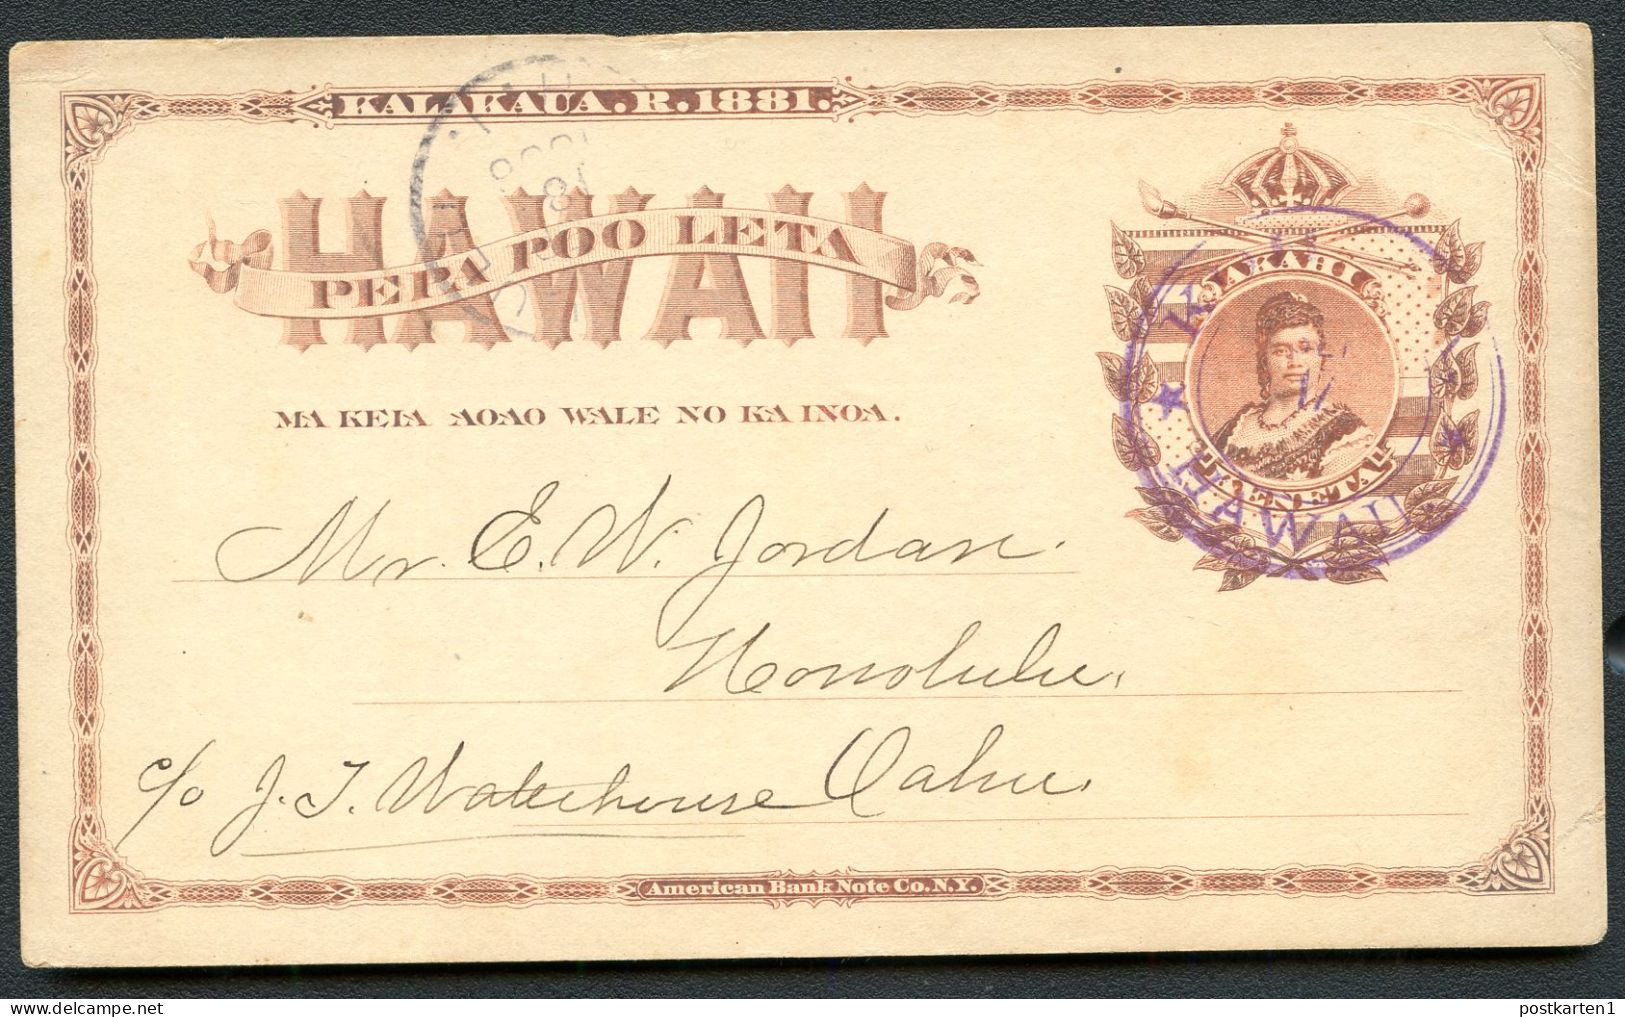 Hawaii Postal Card UX1 Kohala Hawaii- Honolulu 1886 - Hawaï